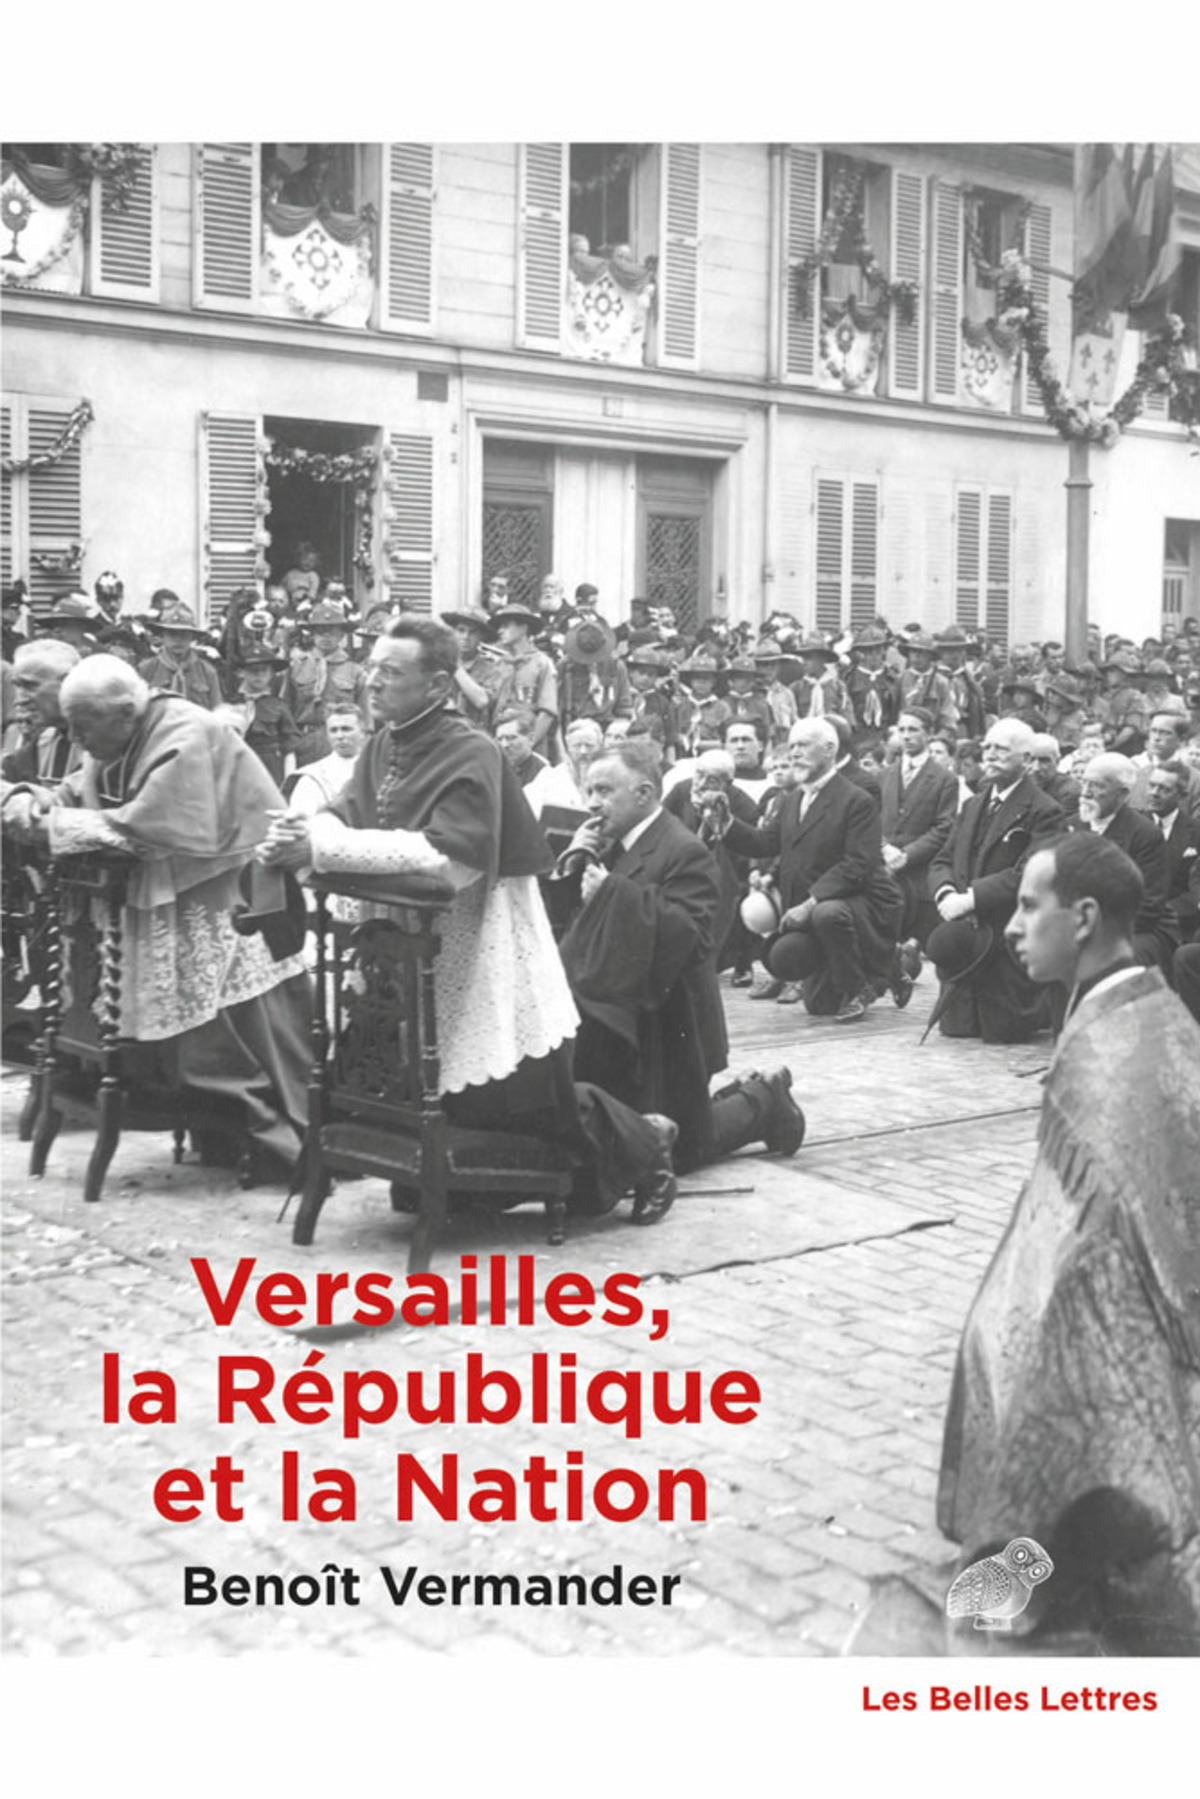 Versailles, la République et la Nation